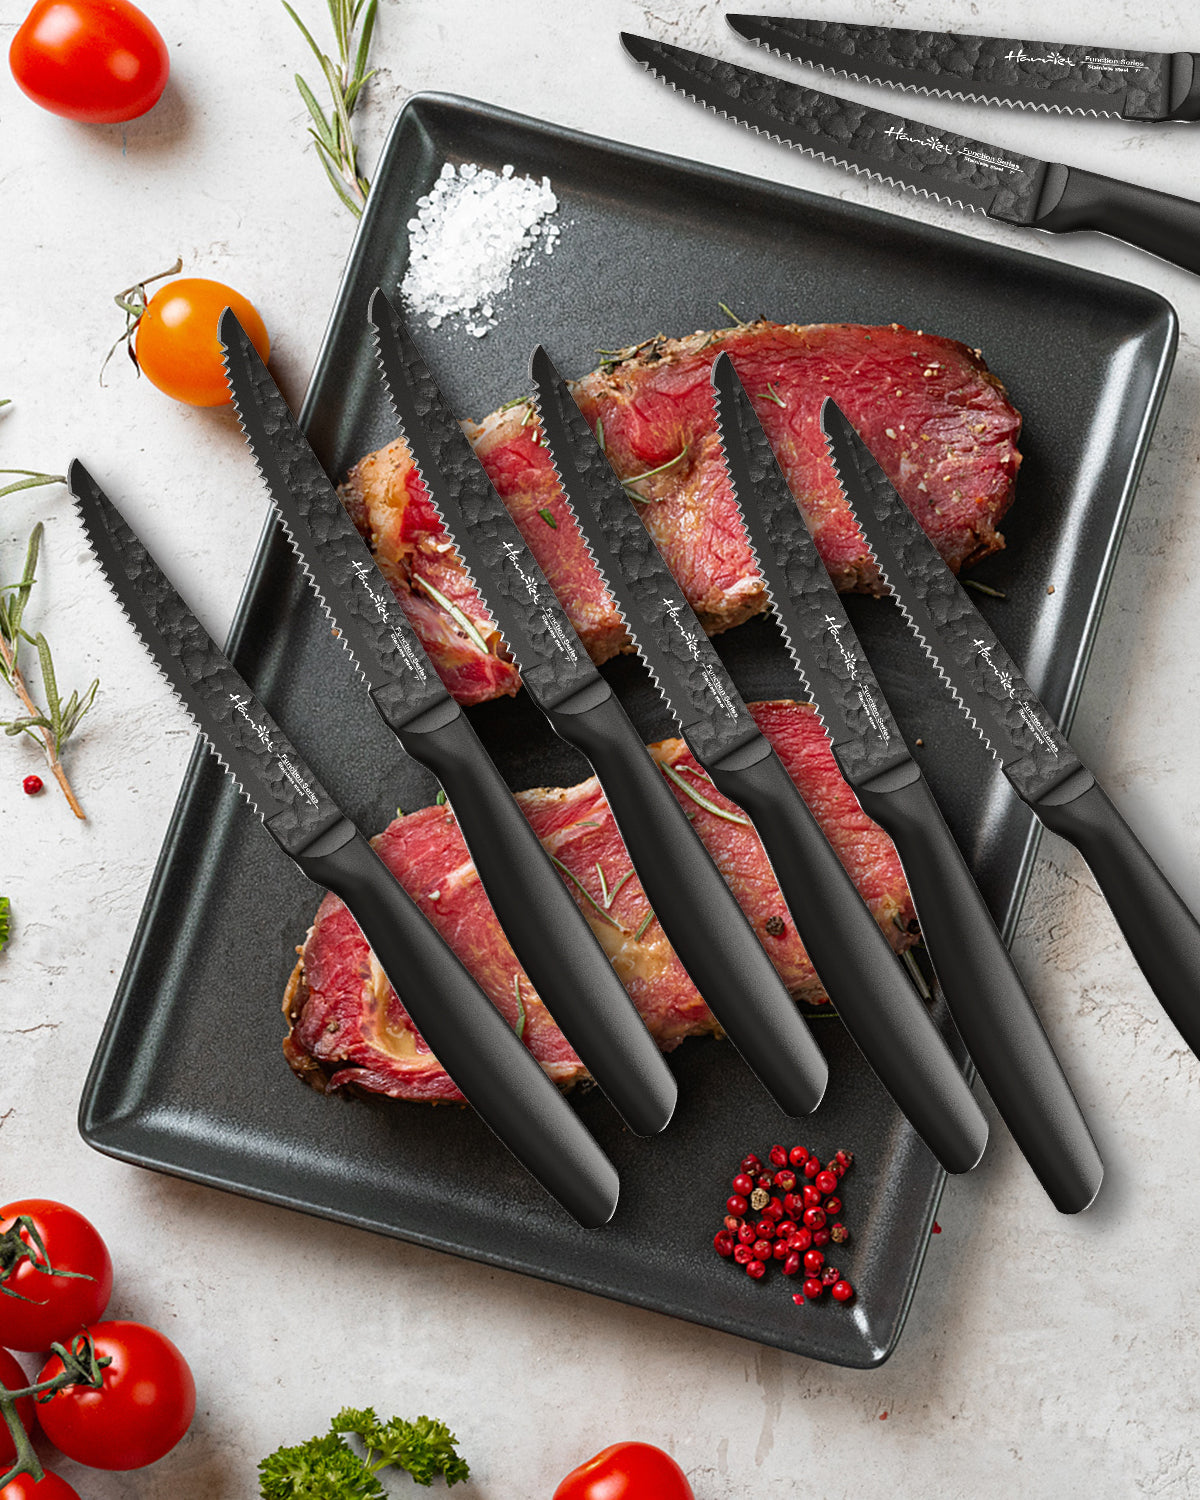 Cutluxe Steak Knives - Serrated Steak Knife Set of 4 - German Steel -  Artisan Series 